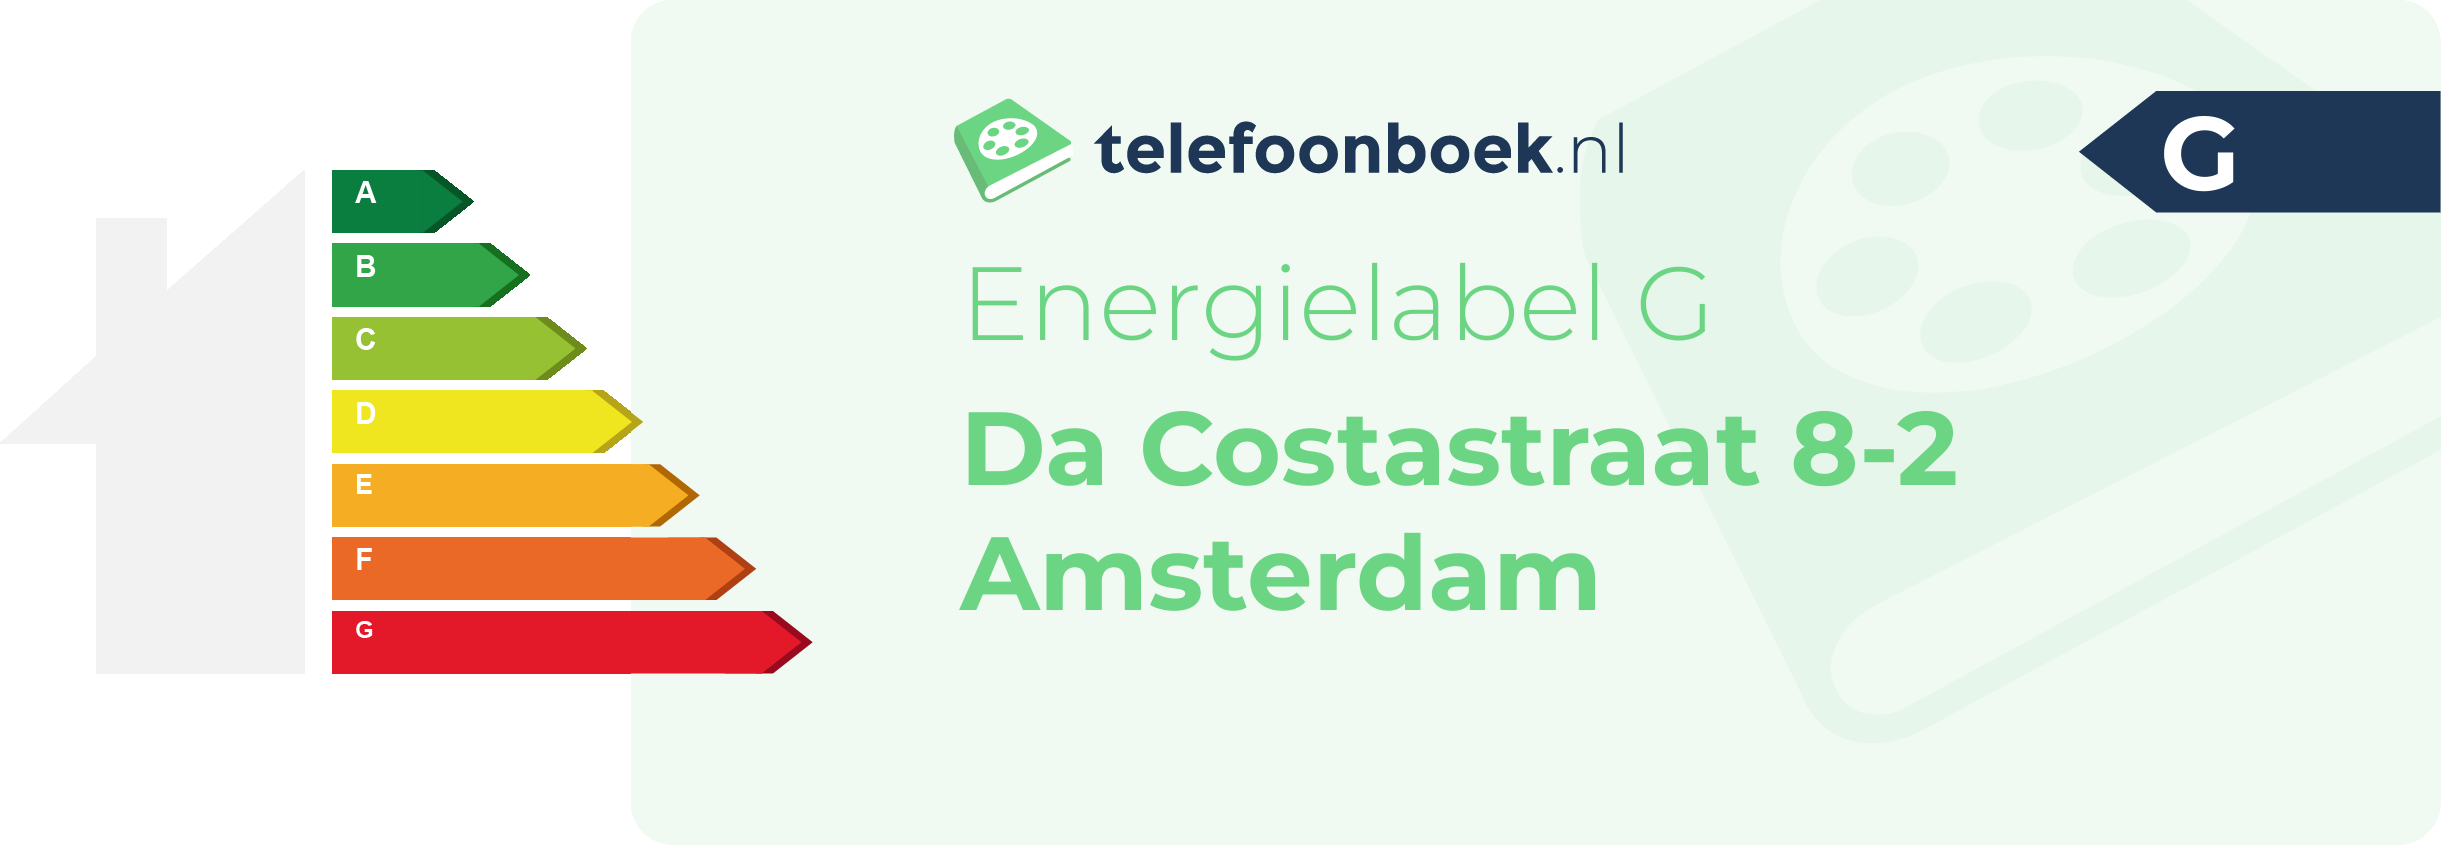 Energielabel Da Costastraat 8-2 Amsterdam